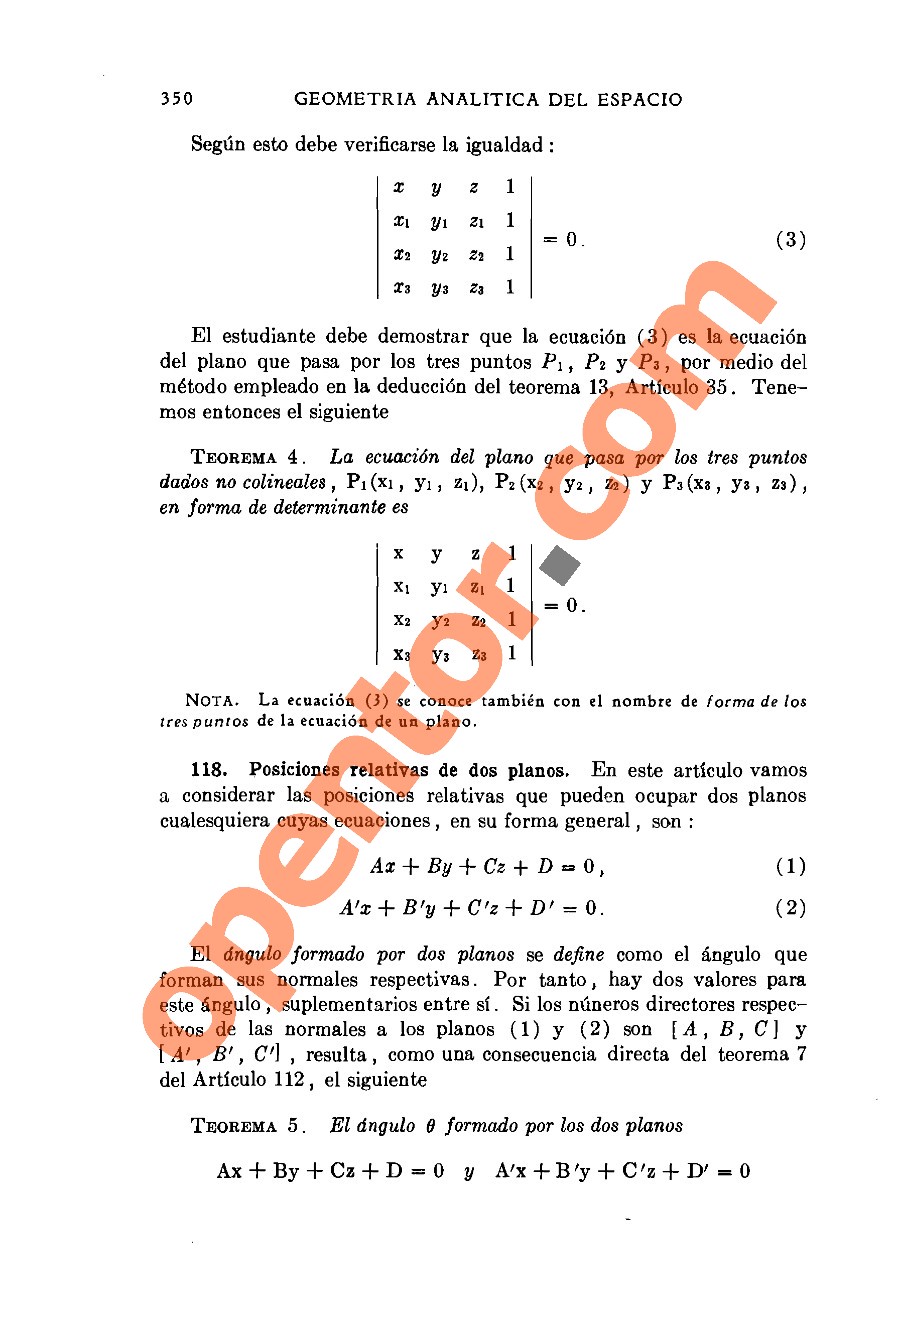 Geometría Analítica de Lehmann - Página 350